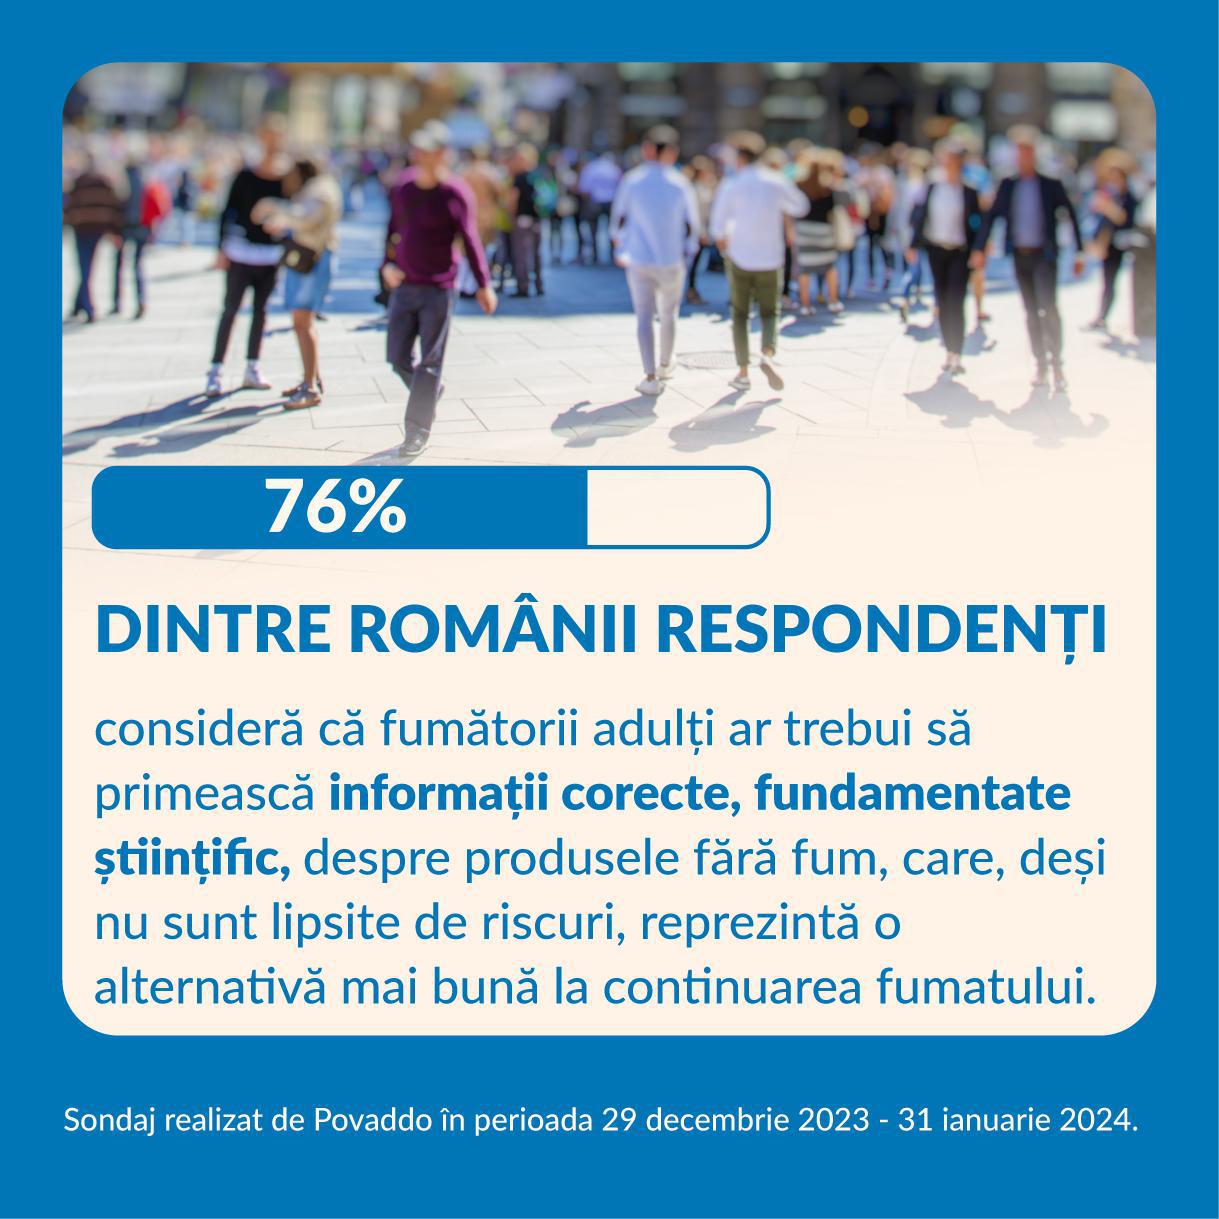 76% dintre români consideră că fumătorii adulţi ar trebui să primească informaţii corecte, fundamentate ştiinţific, despre produsele fără fum